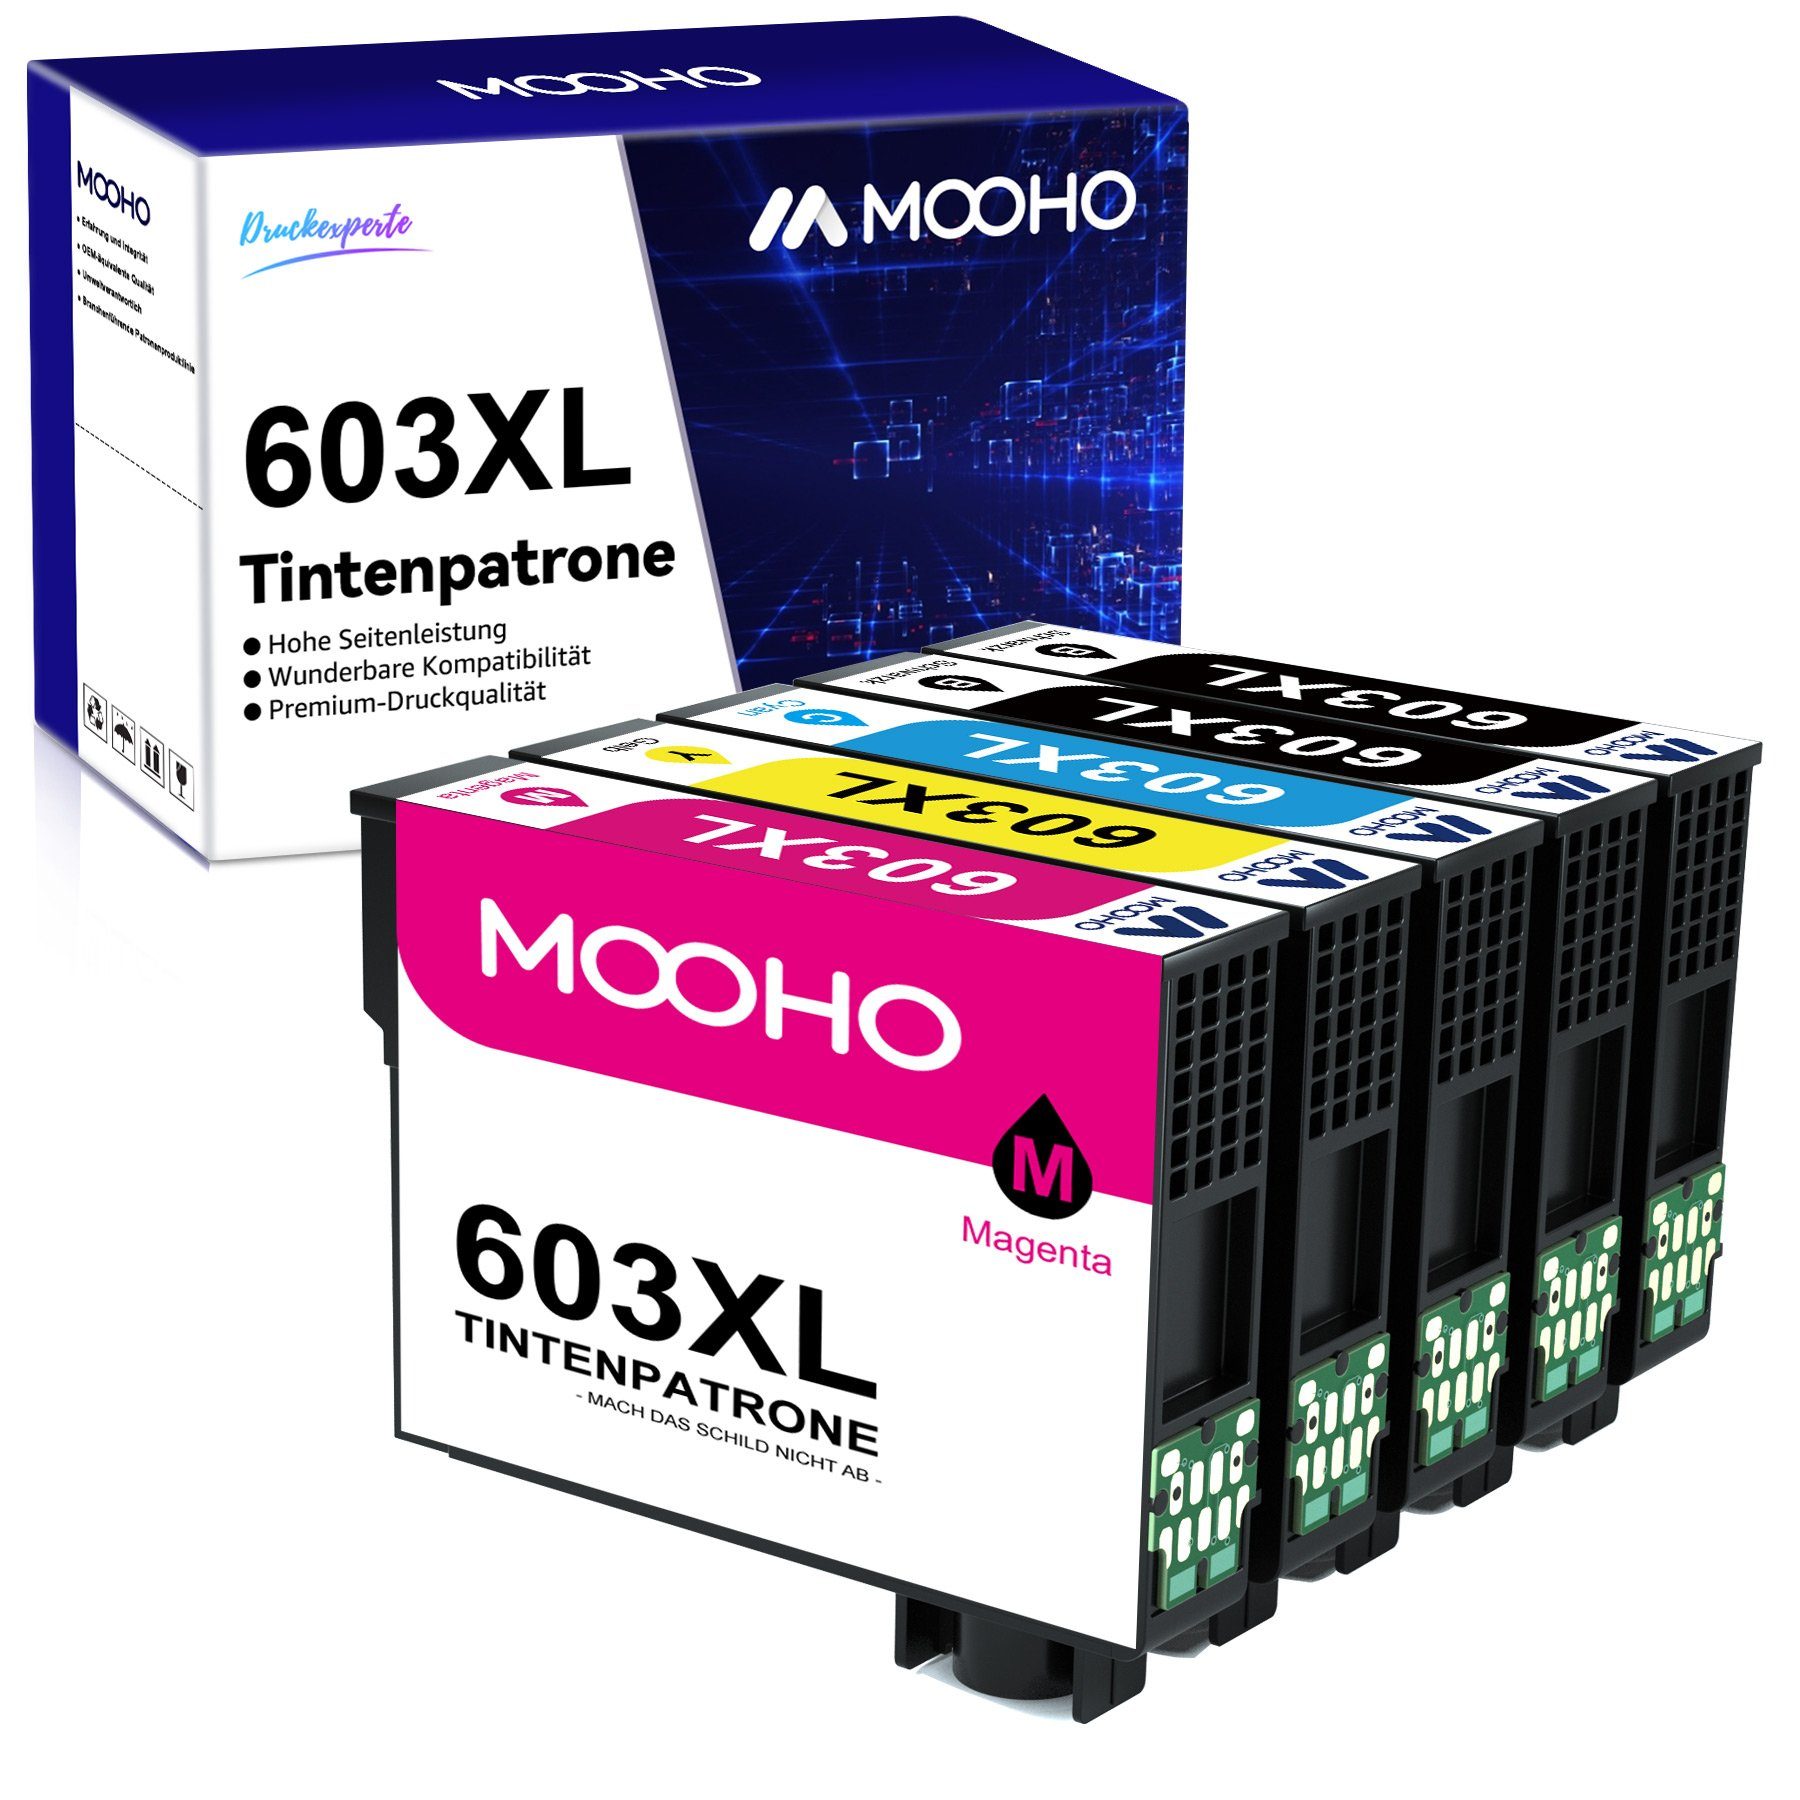 MOOHO ersetzt für EPSON 603XL 603 XL WF-2830 WF-2810 WF-2850 Tintenpatrone 2x Schwarz, 1x Cyan, 1x Magenta, 1x Gelb (5er-pack)